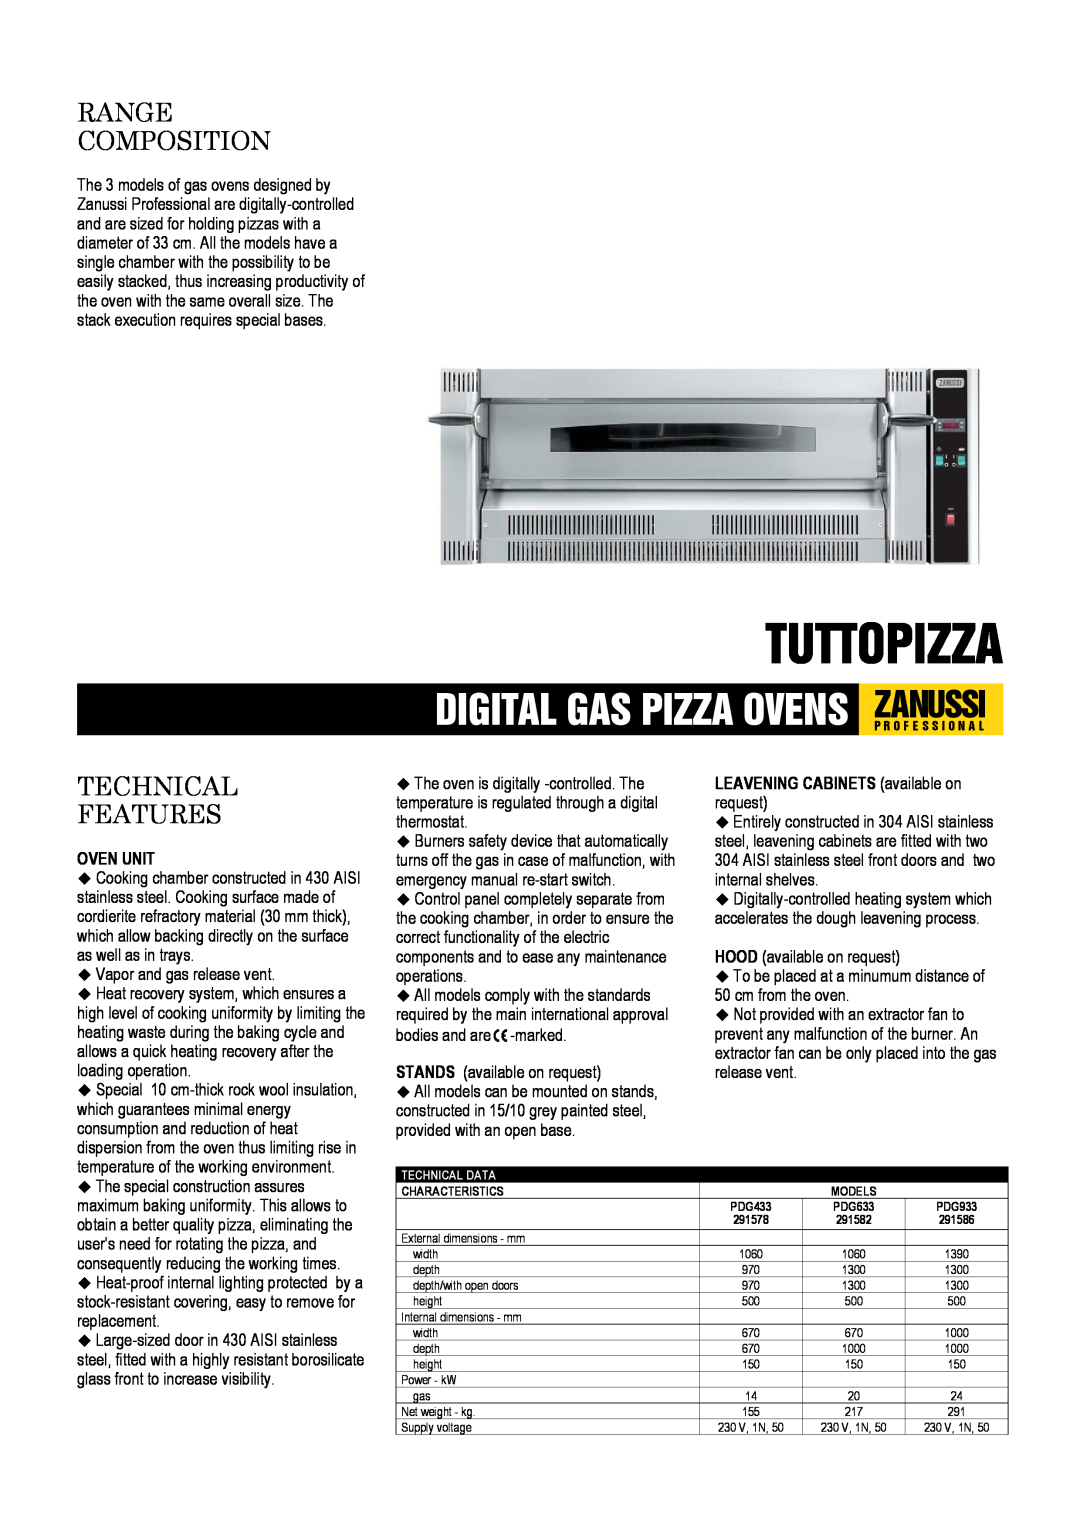 Zanussi 291578 dimensions Tuttopizza, Digital Gas Pizza Ovens Zanussip R O F E S S I O N A L, Range Composition, Oven Unit 